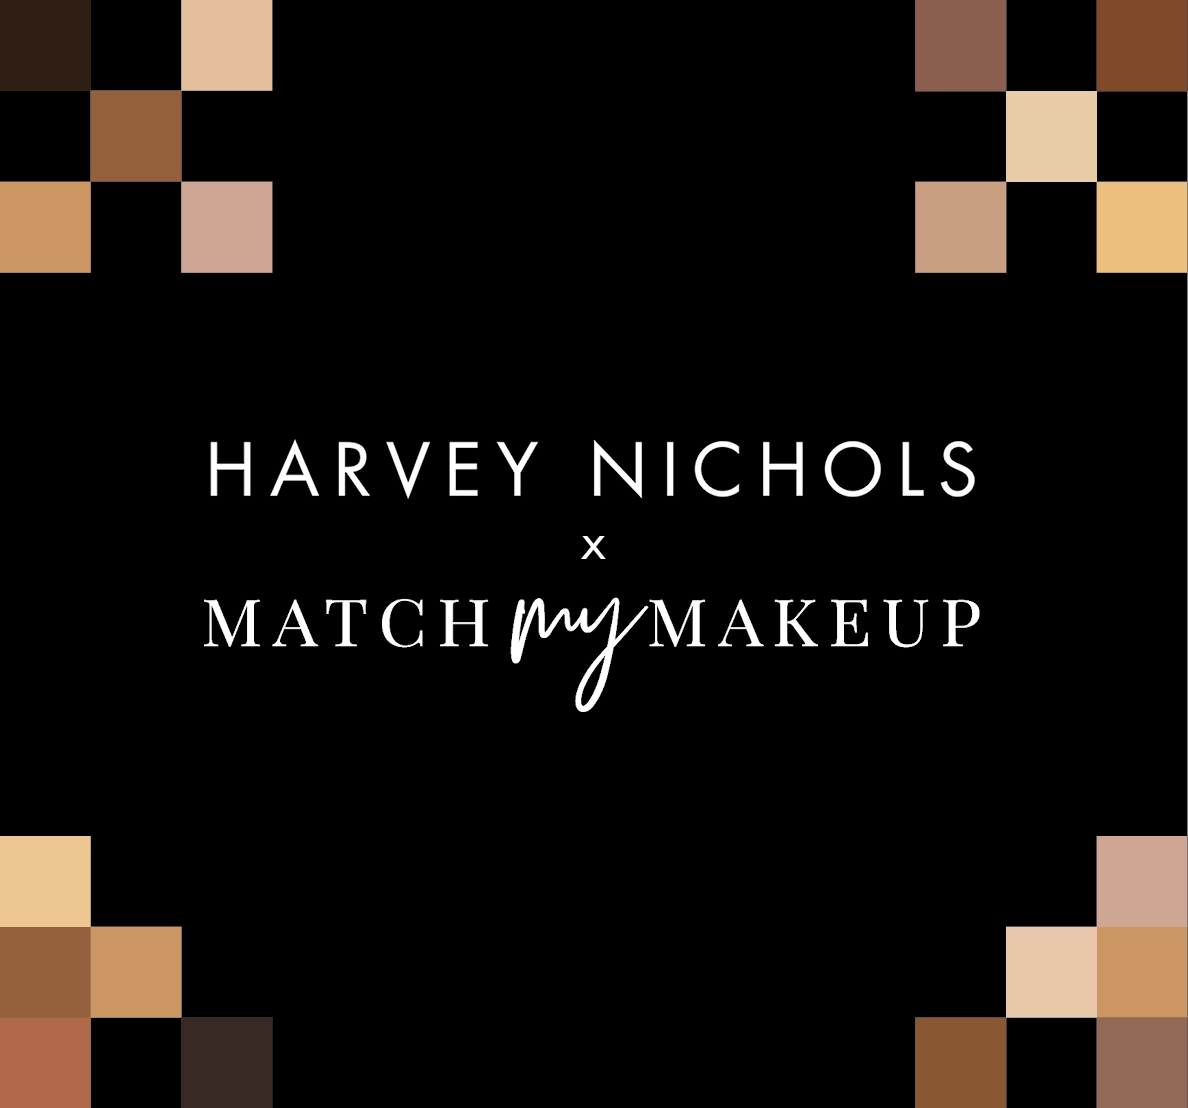 Besætte perforere I særdeleshed MATCH MY MAKEUP - Harvey Nichols Harvey Nichols